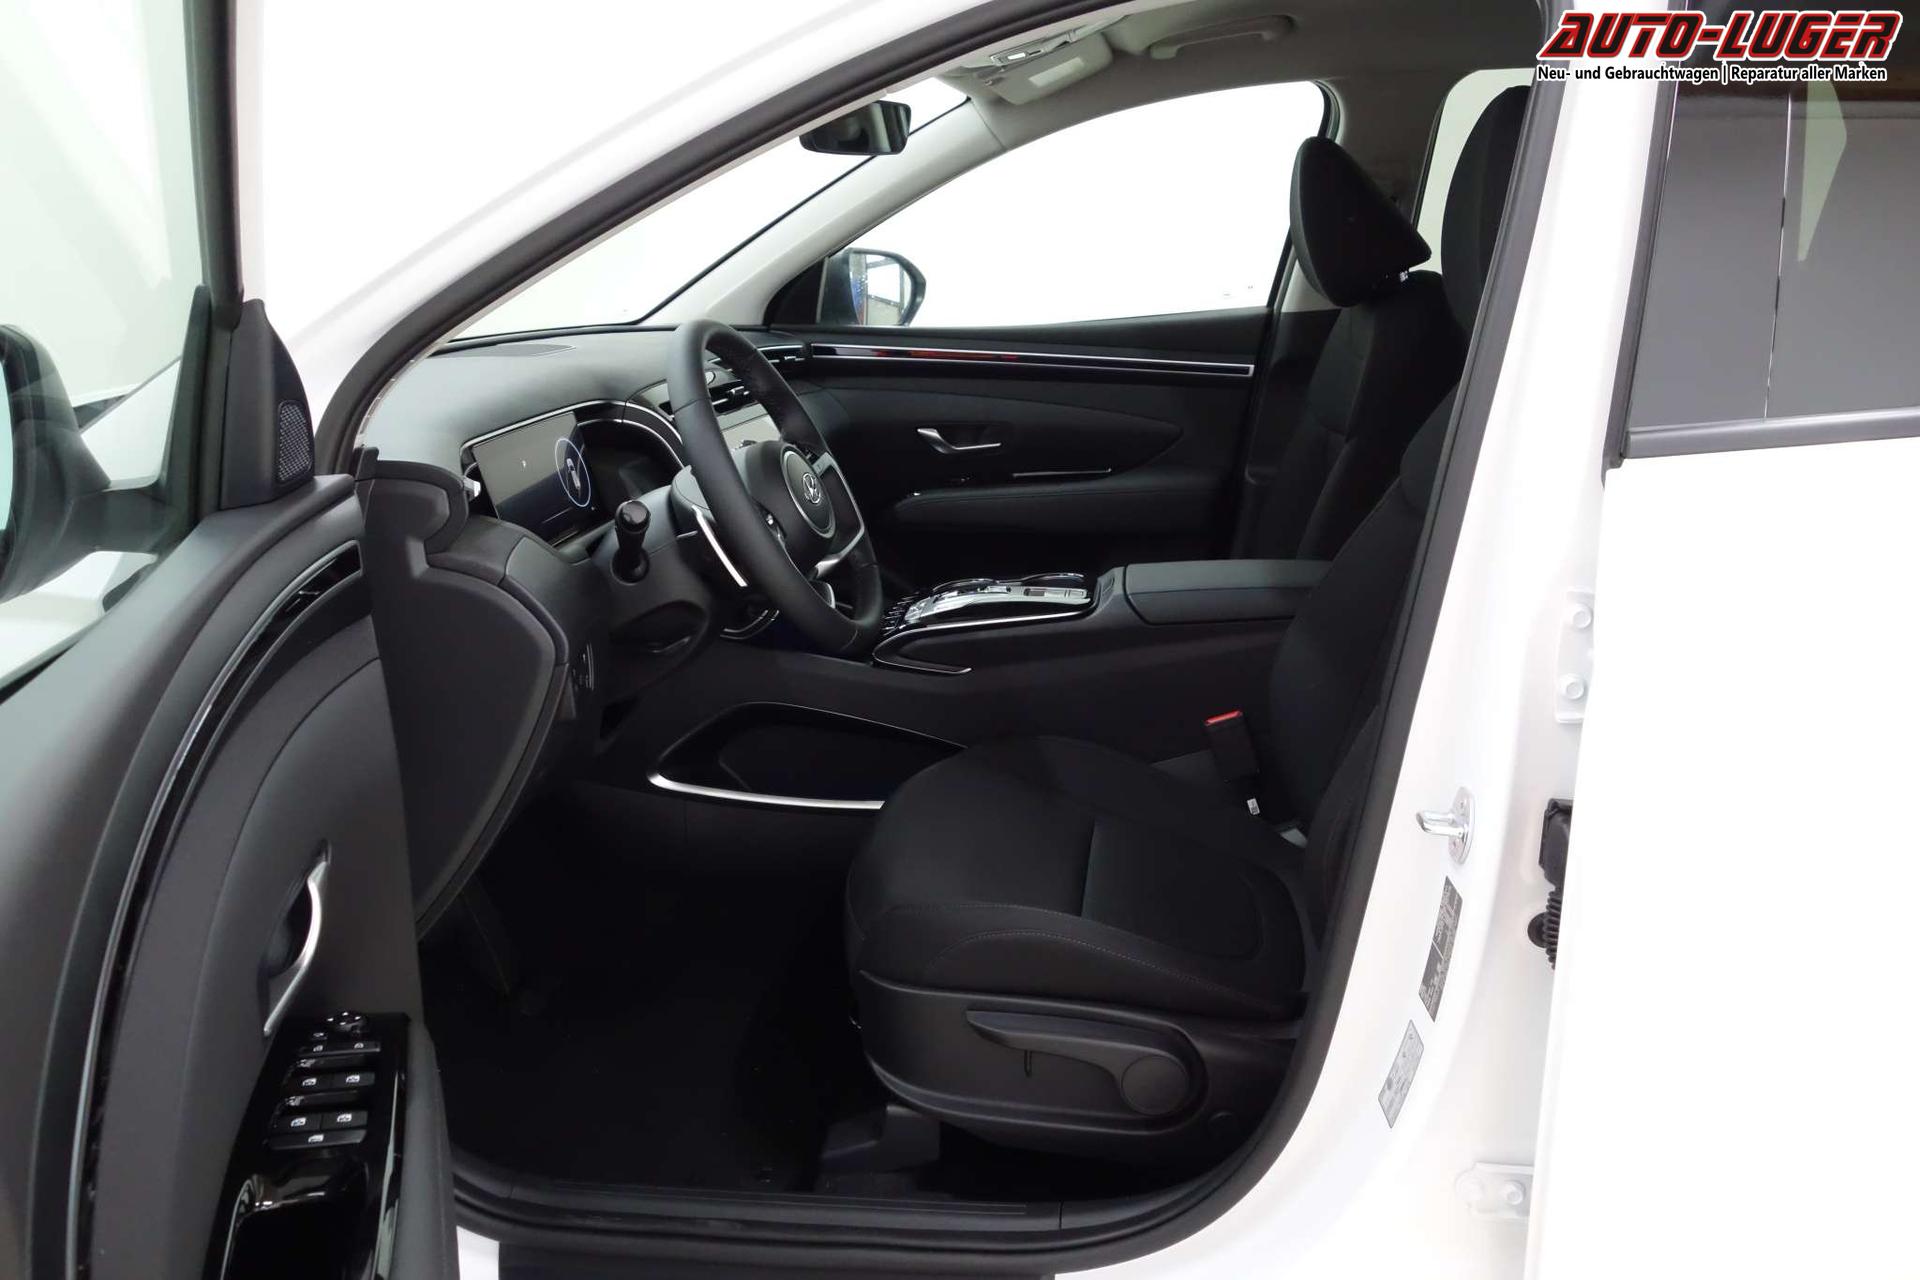 Hyundai TUCSON Trend Line 1.6 T-GDi HEV 4WD AT 110kW Smart Sense+ Paket,  Winter-Paket, Klimaautomatik, 10,25 Navigationssystem, Parksensoren vorne  und hinten, LED Licht, Kurvenlicht, 17 Zoll Leichtmetallfelgen, uvm.  Lagerfahrzeug Benzin Autom. 6-Gang